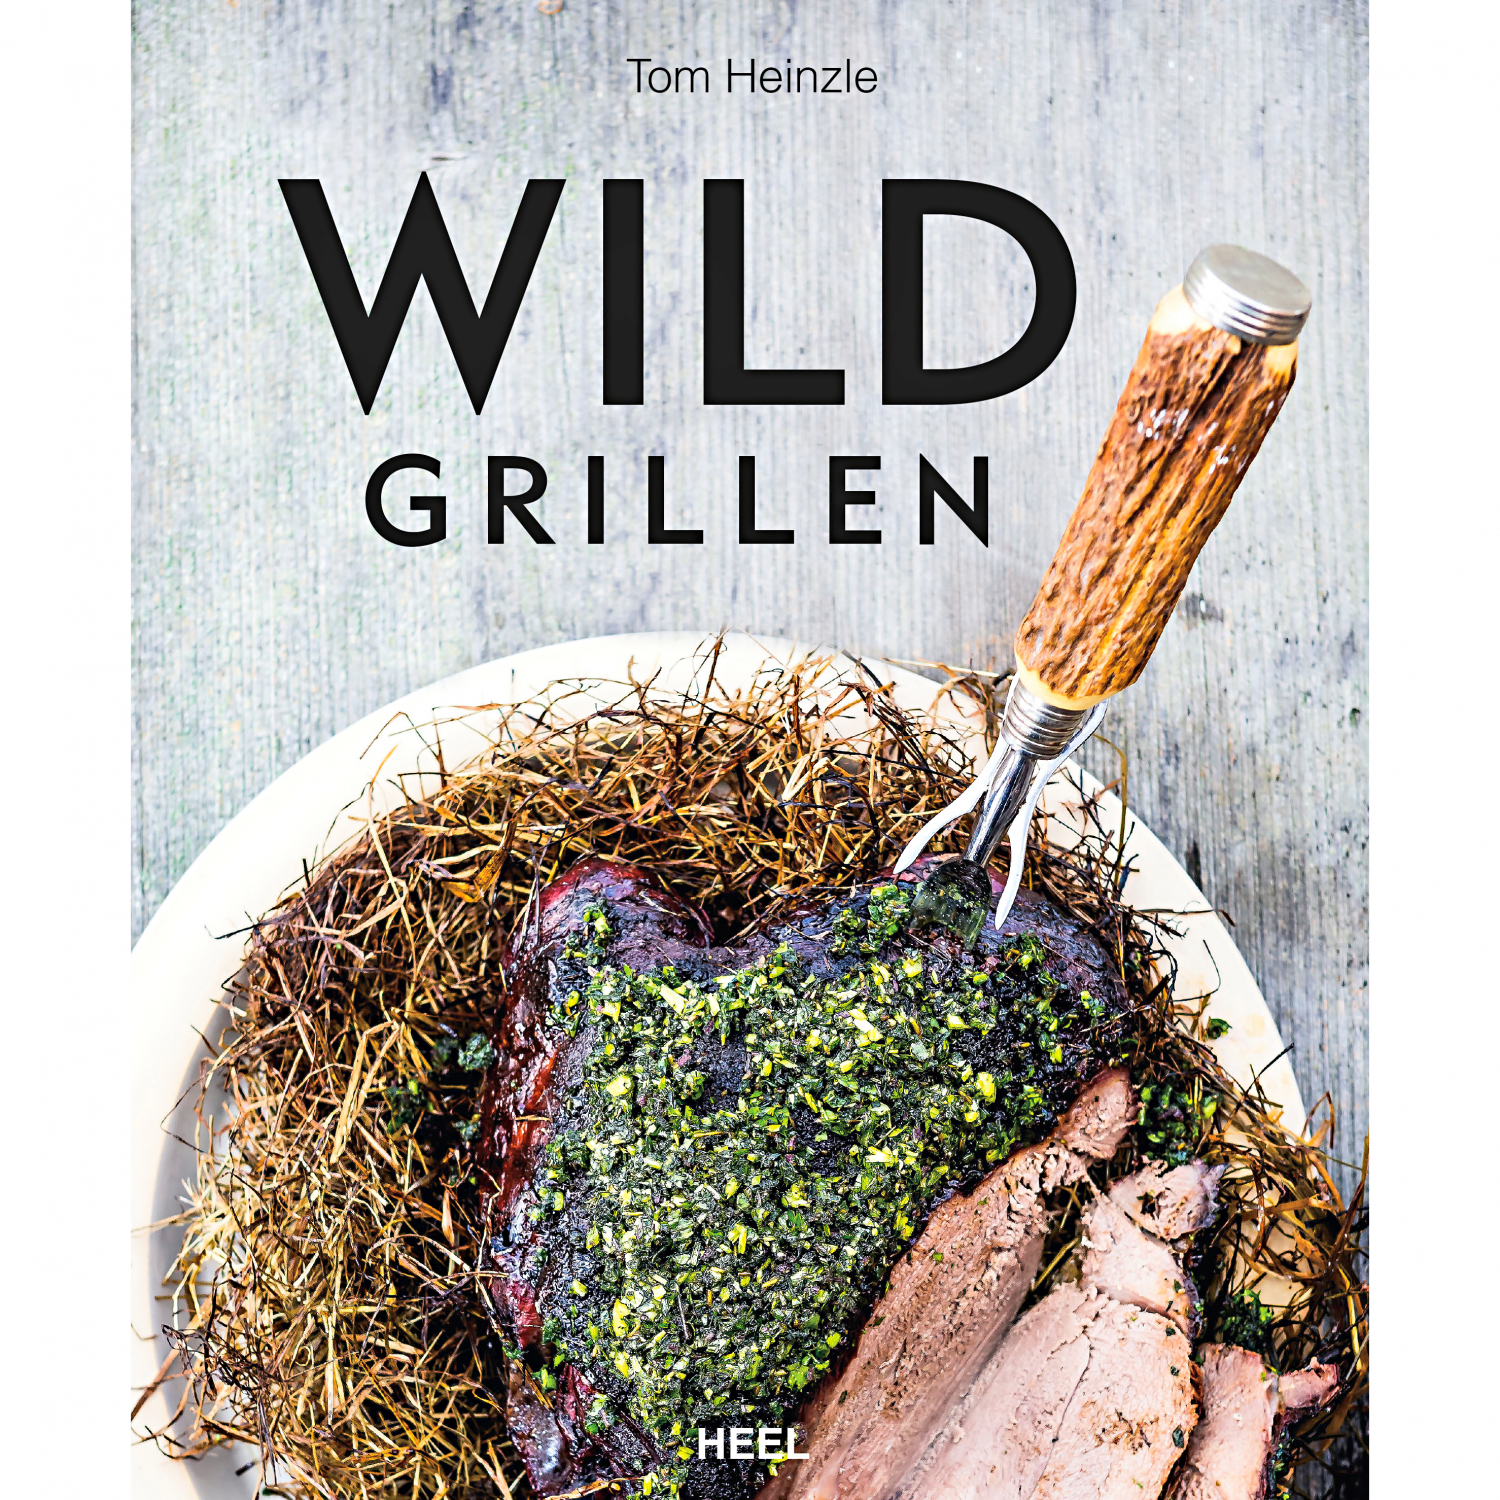 Wild grillen (Tom Heinzle, German Book) 